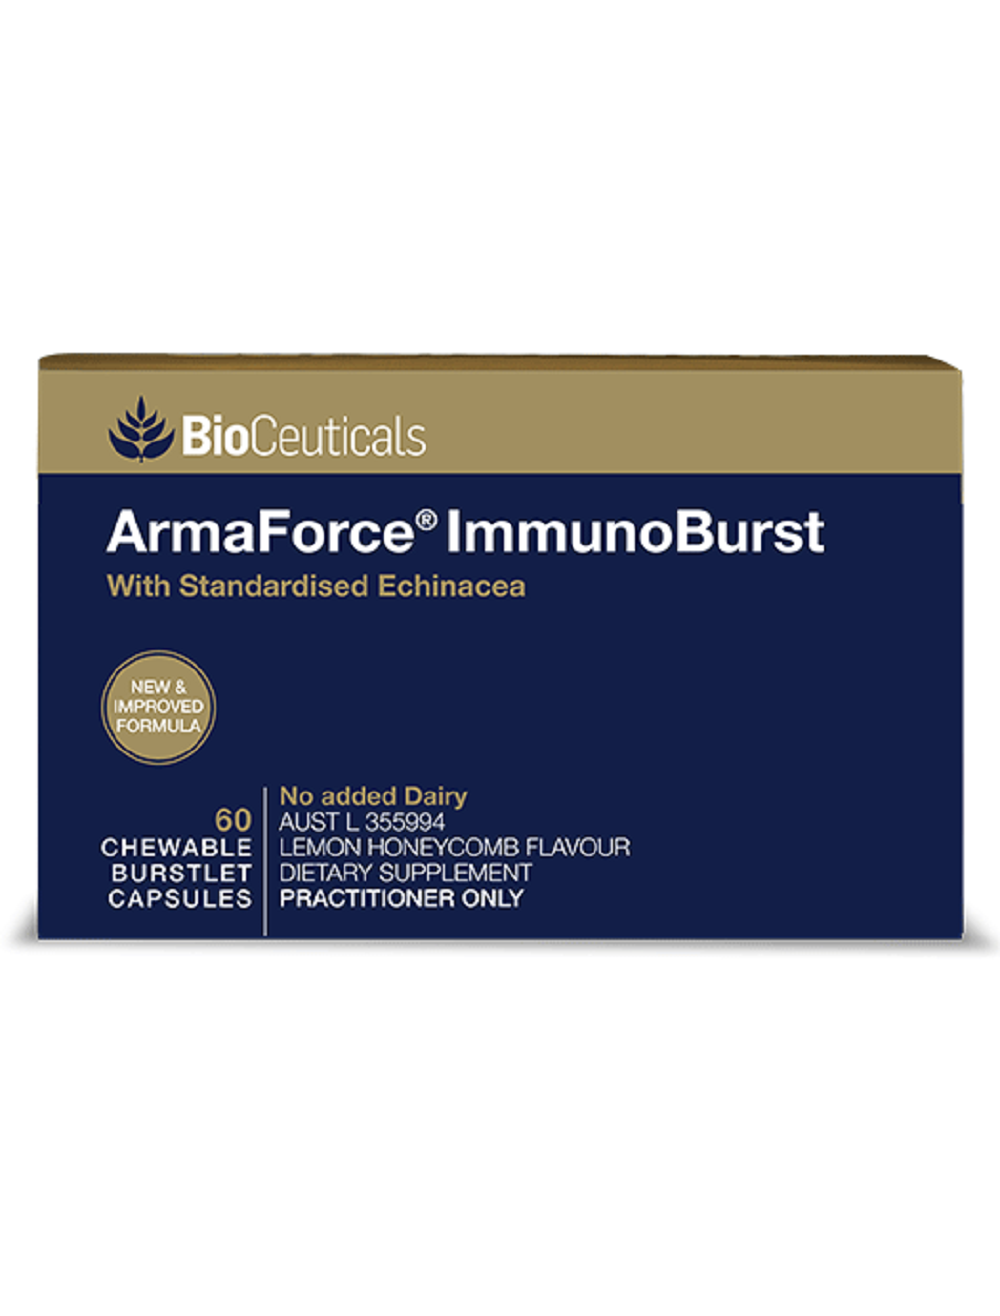 BioCeuticals ArmaForce ImmunoBurst 60 chewable capsules